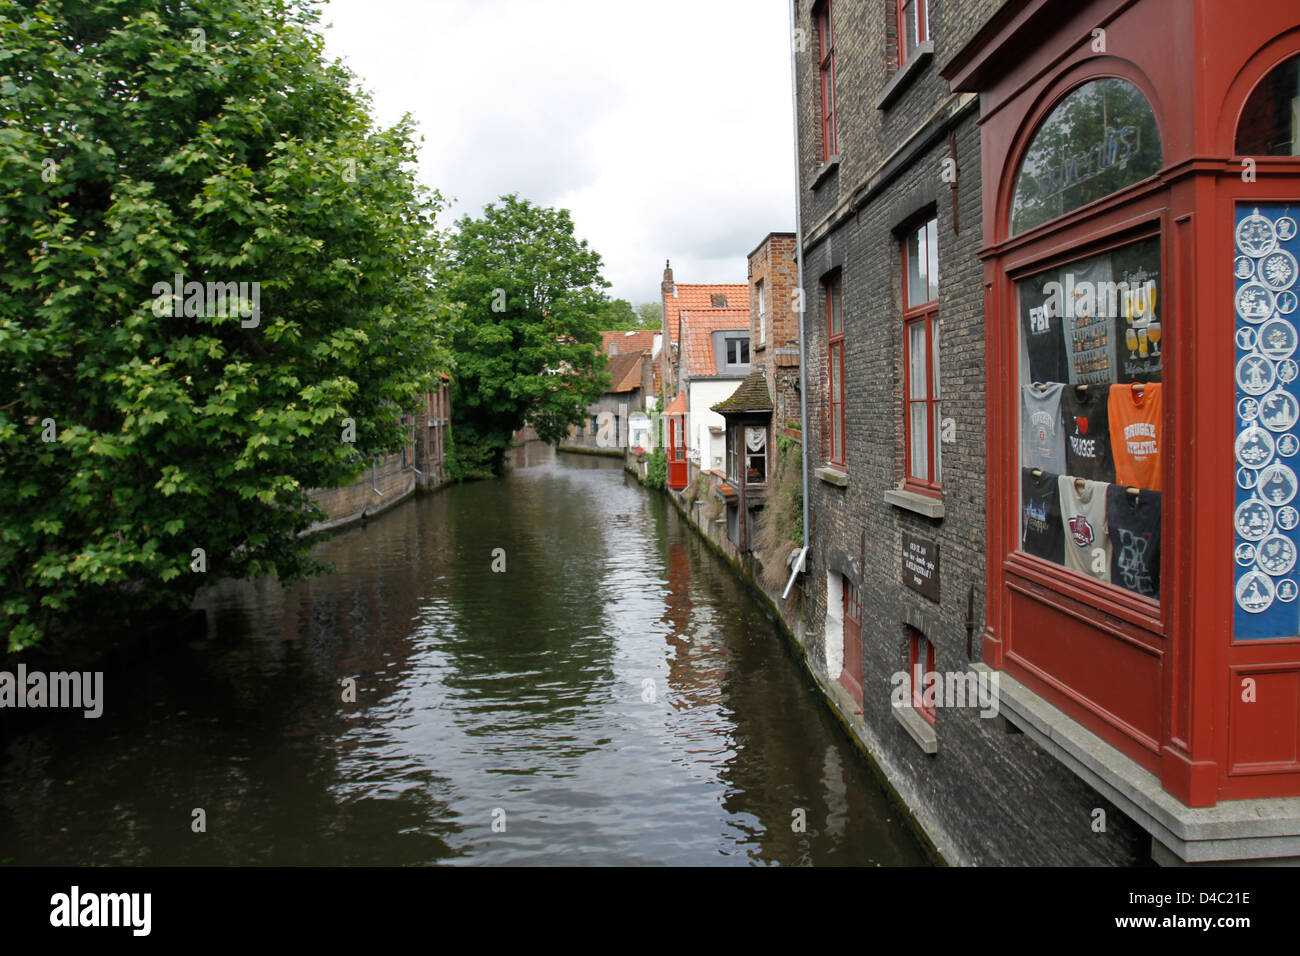 Billet d'images de Brugge, Belgique Banque D'Images